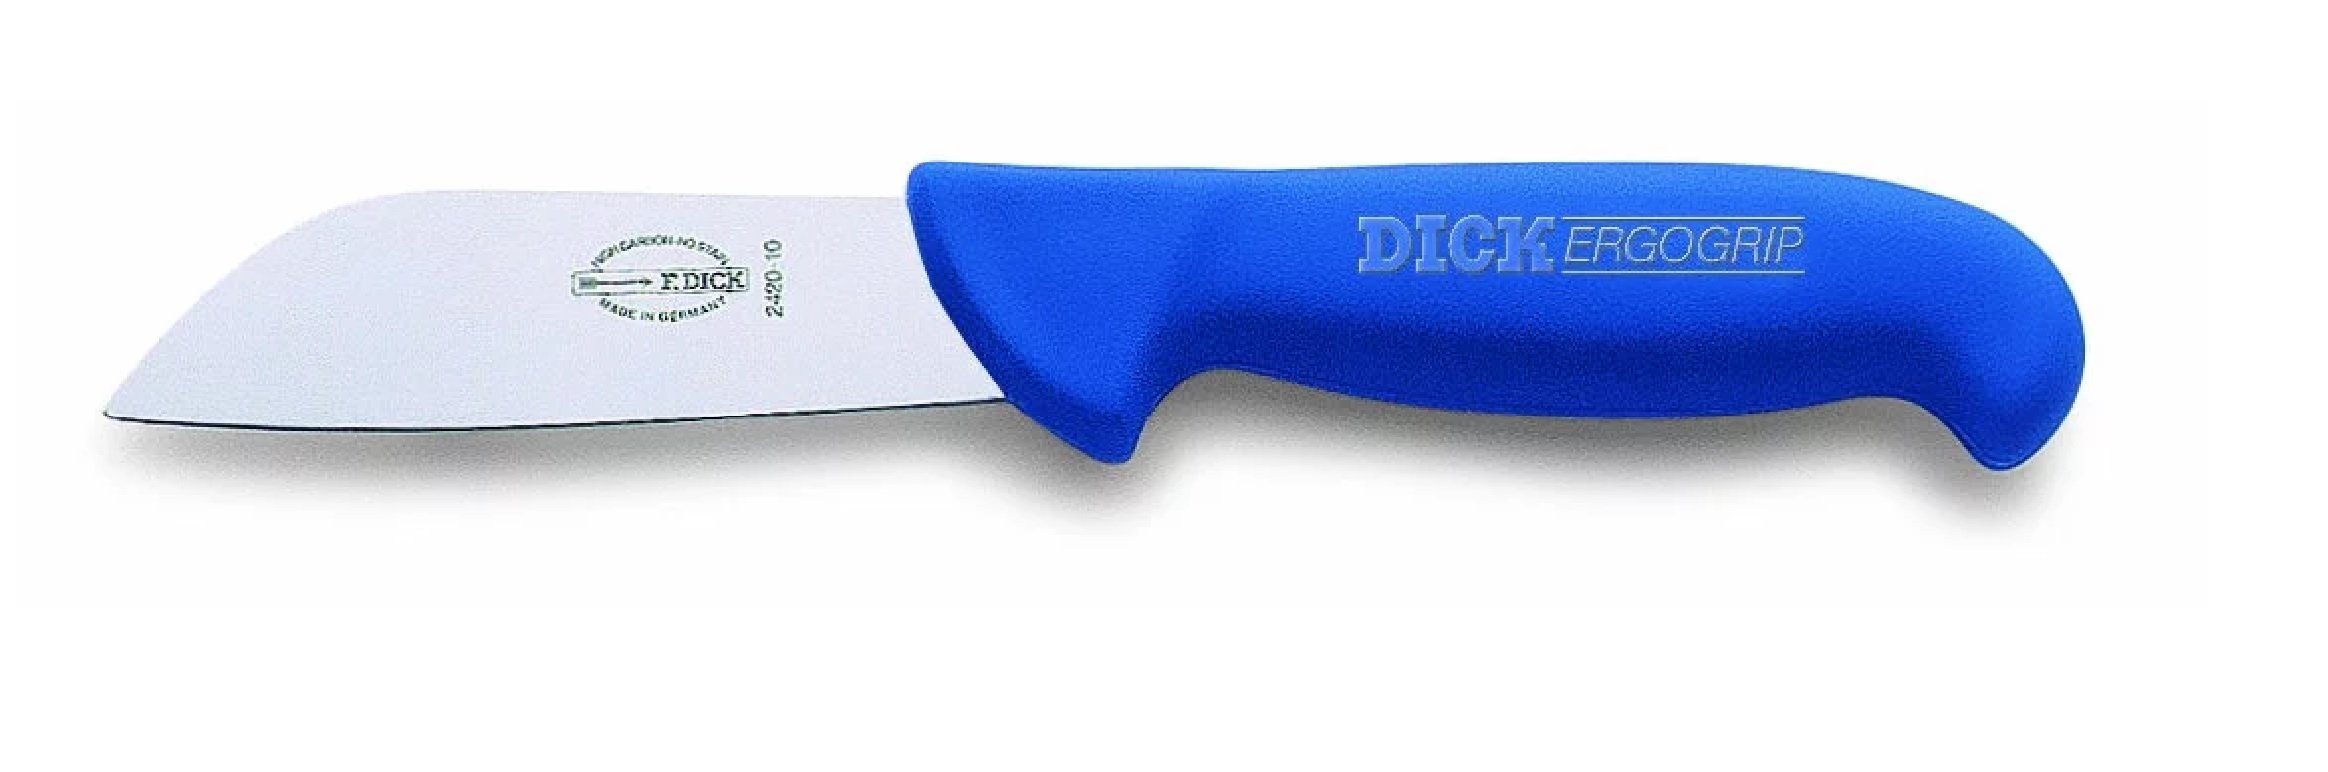 F. DICK Kochmesser Dick Fischmesser ErgoGrip kurze 10 cm Messer Klinge 8242010